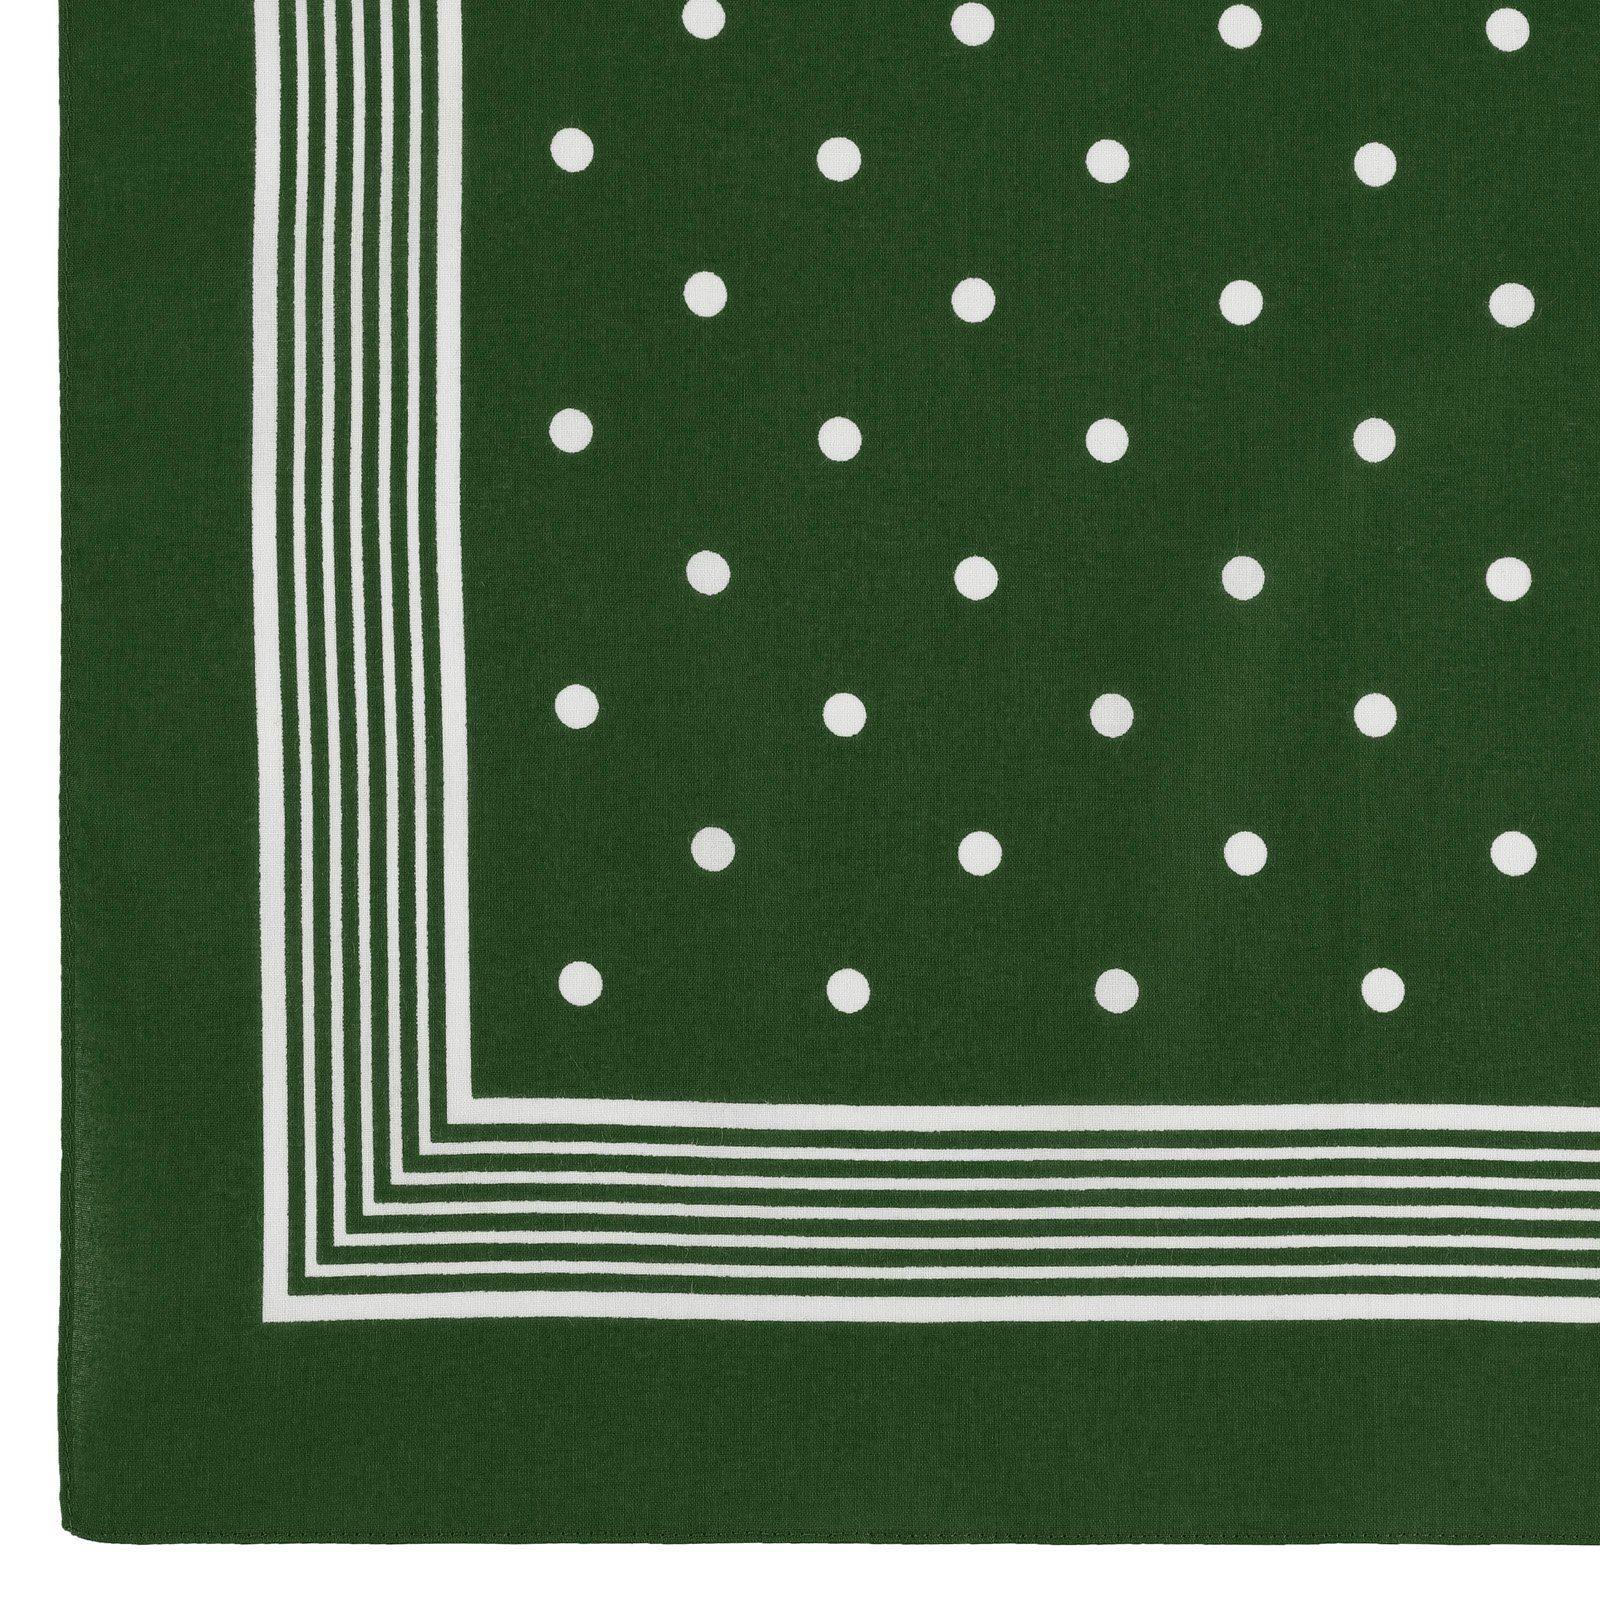 modAS Modetuch, cm- Designs und Grün in 54x54 Baumwolle Tuch mit verschiedenen Kopftuch (76) ca. Bandana Vierecktuch Punkte aus Farben